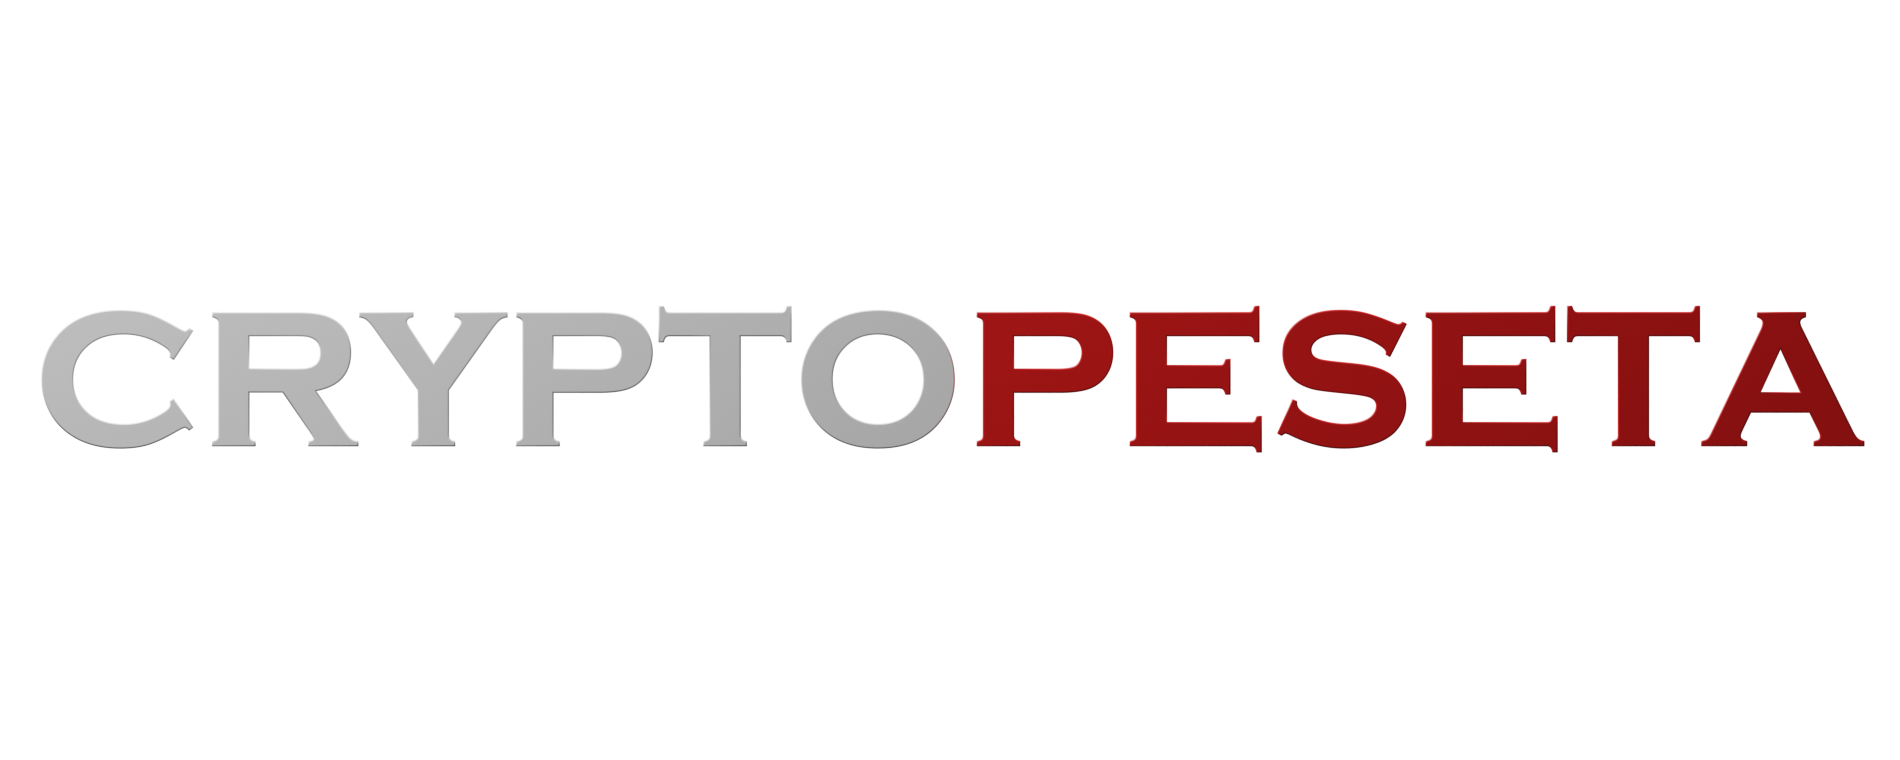 Logotipo cryptopeseta